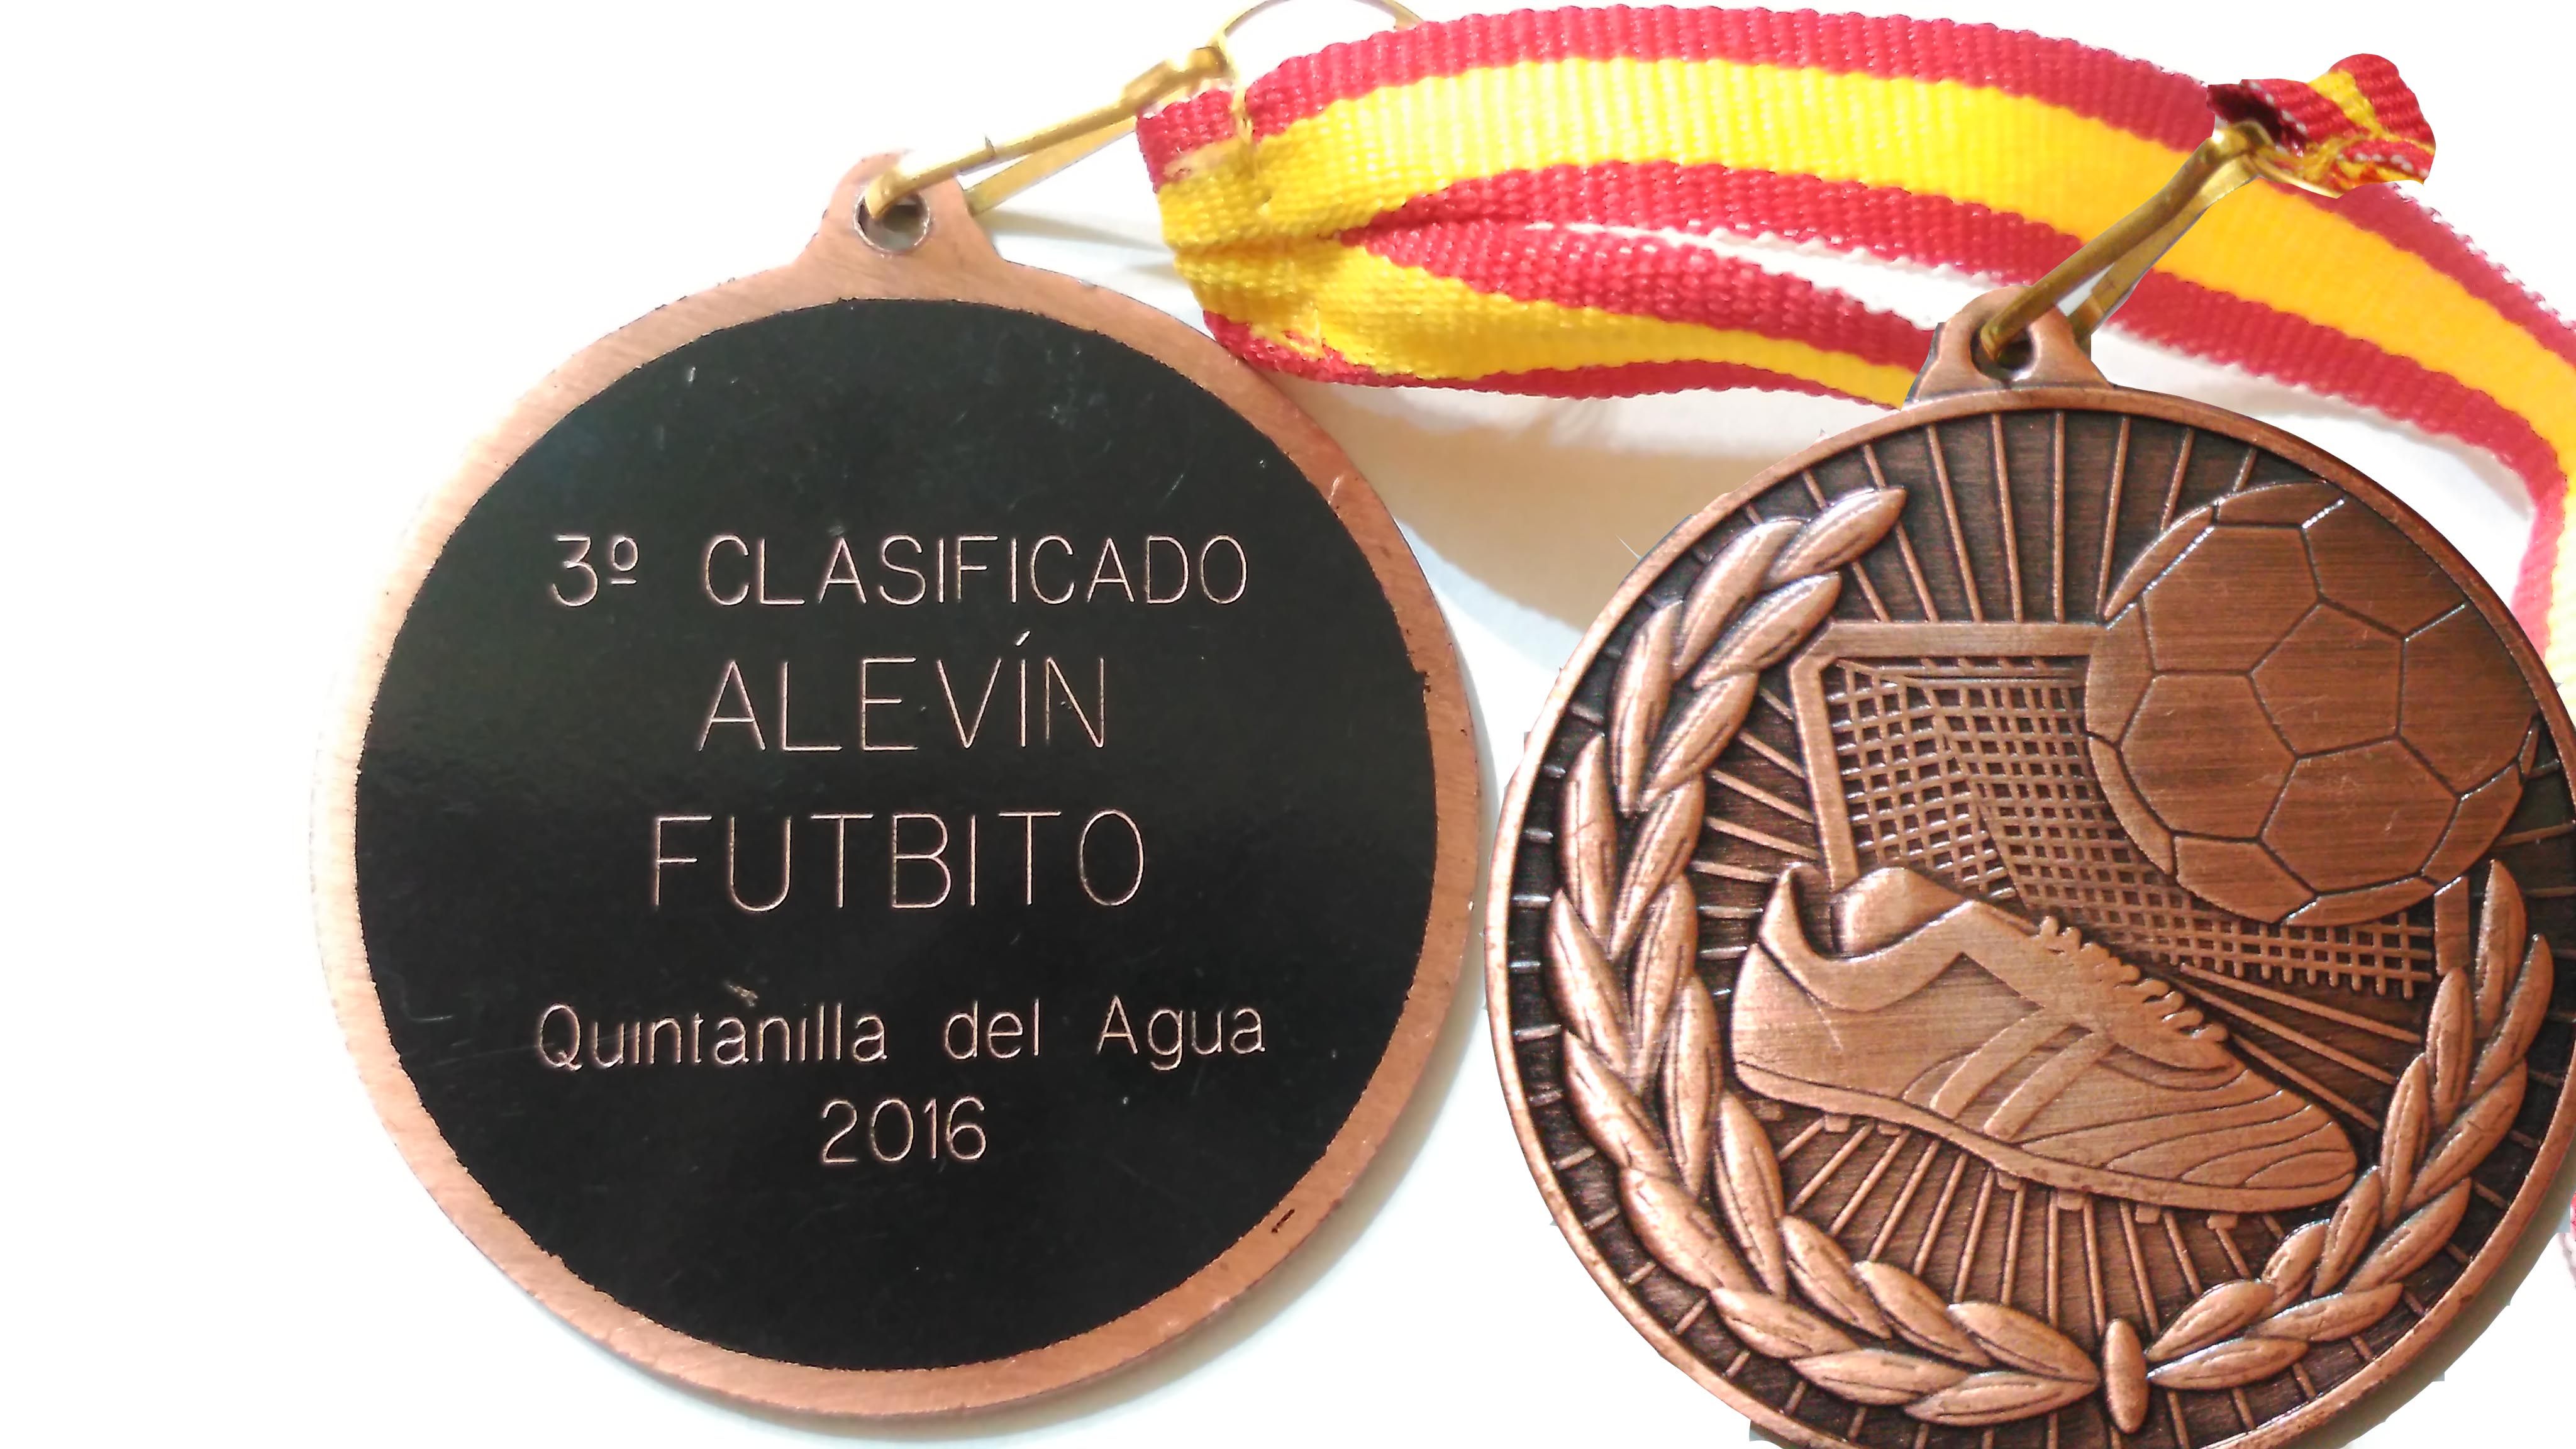 Mecerreyes medallas de futbito 2016 ganada en Quintanilla del Agua